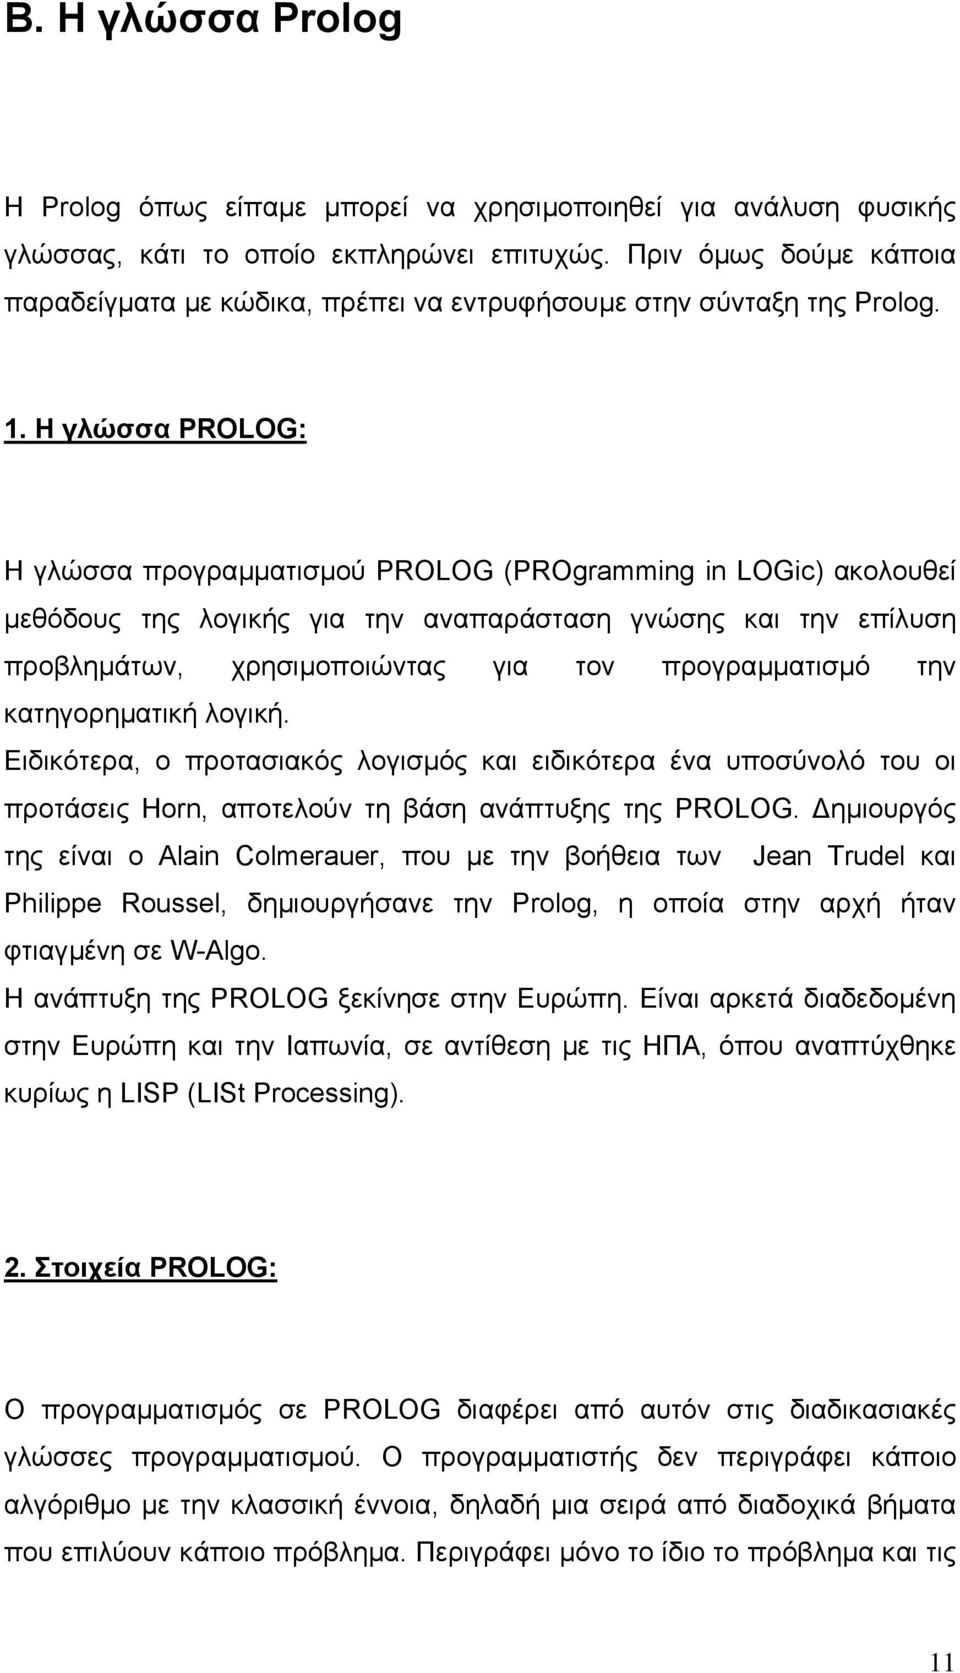 Η γλώσσα PROLOG: Η γλώσσα προγραµµατισµού PROLOG (PROgramming in LOGic) ακολουθεί µεθόδους της λογικής για την αναπαράσταση γνώσης και την επίλυση προβληµάτων, χρησιµοποιώντας για τον προγραµµατισµό